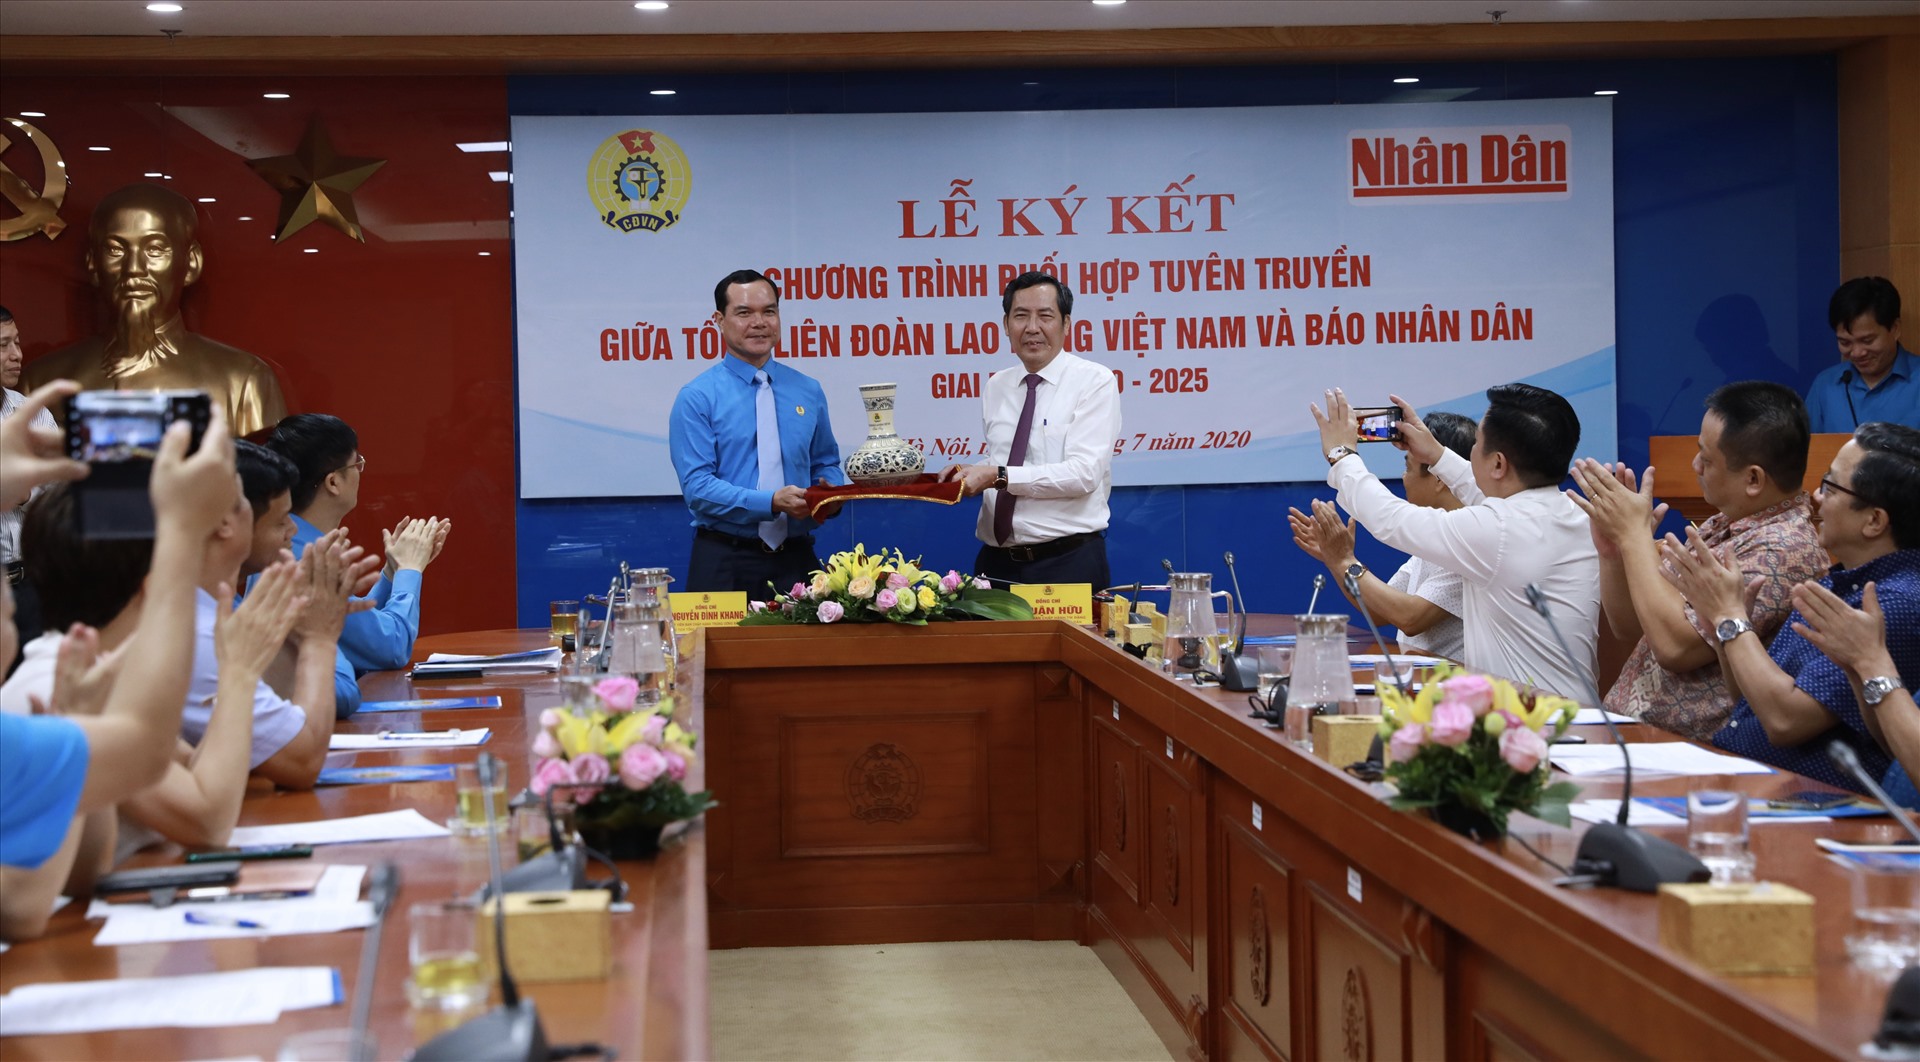 Đồng chí Nguyễn Đình Khang (bên trái) tặng quà lưu niệm tới lãnh đạo Báo Nhân Dân. Ảnh: Hải Nguyễn